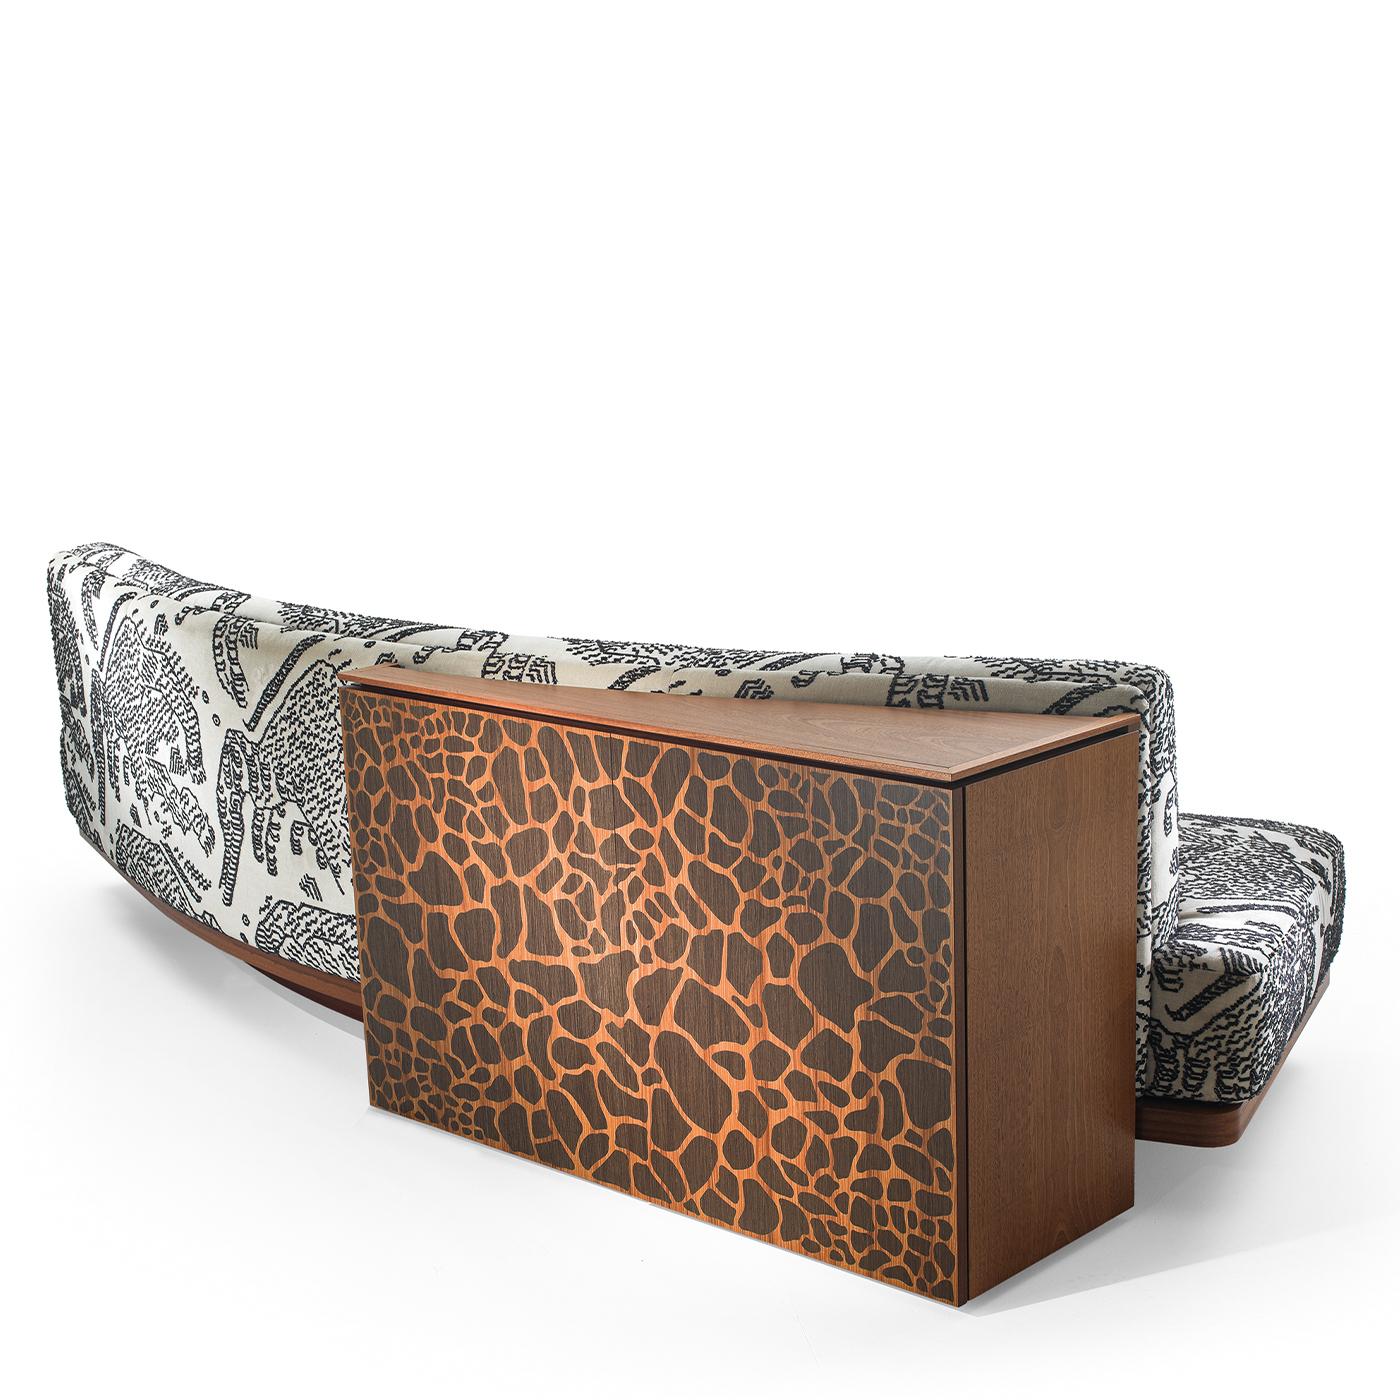 Dieses multifunktionale Sofa zeichnet sich durch einen zweitürigen Rückenschrank aus, der mit einer Intarsienarbeit aus Giraffenstreifen auf der Mahagonisperrholzstruktur verziert ist. Er ist mit einem Tigerberg-Stoff gepolstert und verfügt über